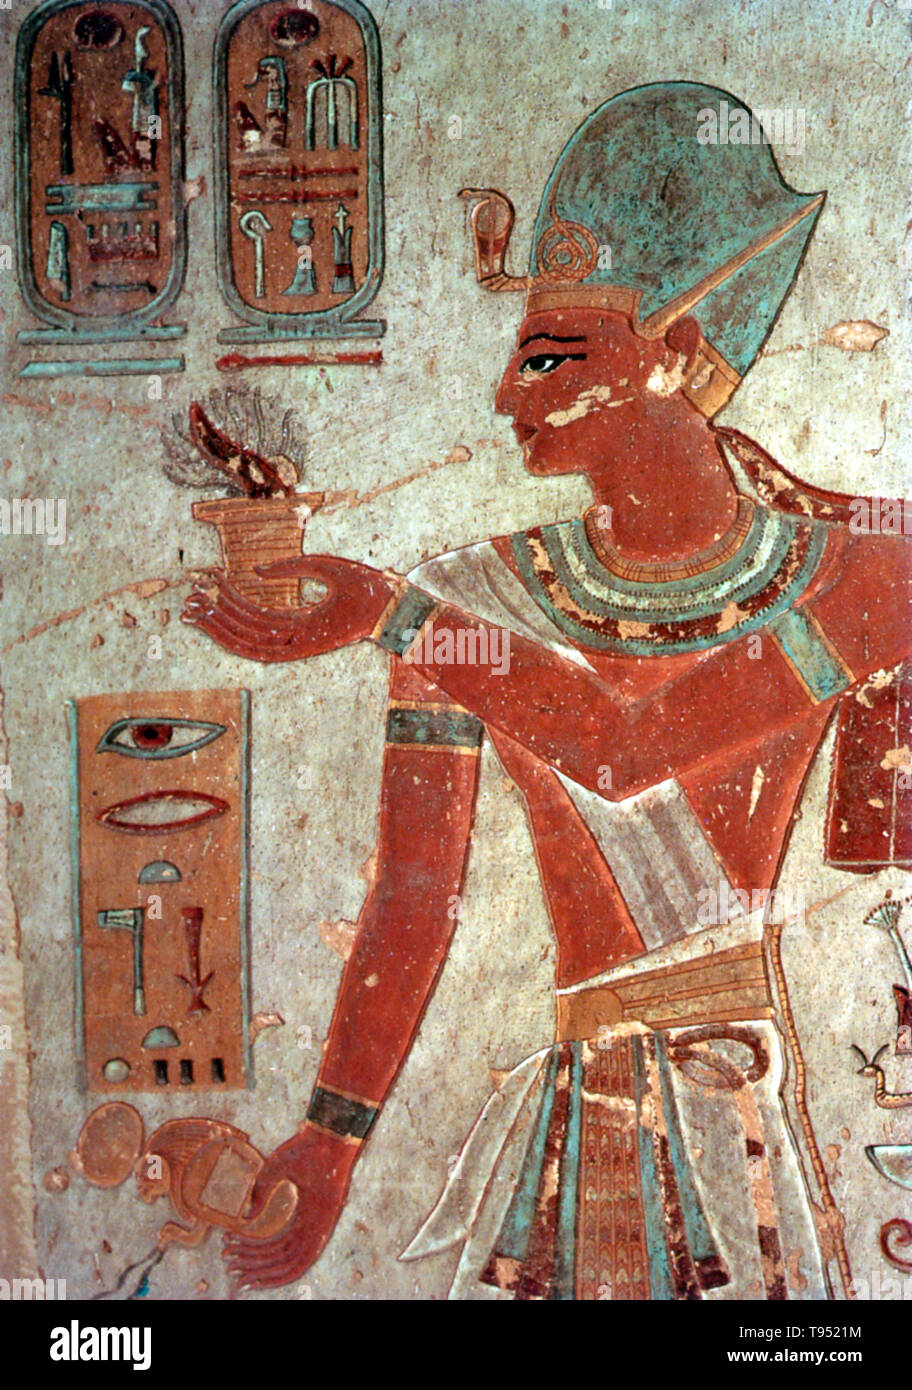 Dipinto di rilievo di Ramses III offrendo incenso, Valle dei Re. Usimare Ramesse III fu il secondo Faraone della xx dinastia e è considerata essere l'ultimo regno nuovo re di esercitare alcuna sostanziale autorità sopra l'Egitto. Il suo lungo regno ha visto il declino egiziano di potere politico ed economico, legati a una serie di incursioni e problemi economici interni. Ramesse III era figlio di Setnakhte e Regina Tiy-Merenese. Foto Stock